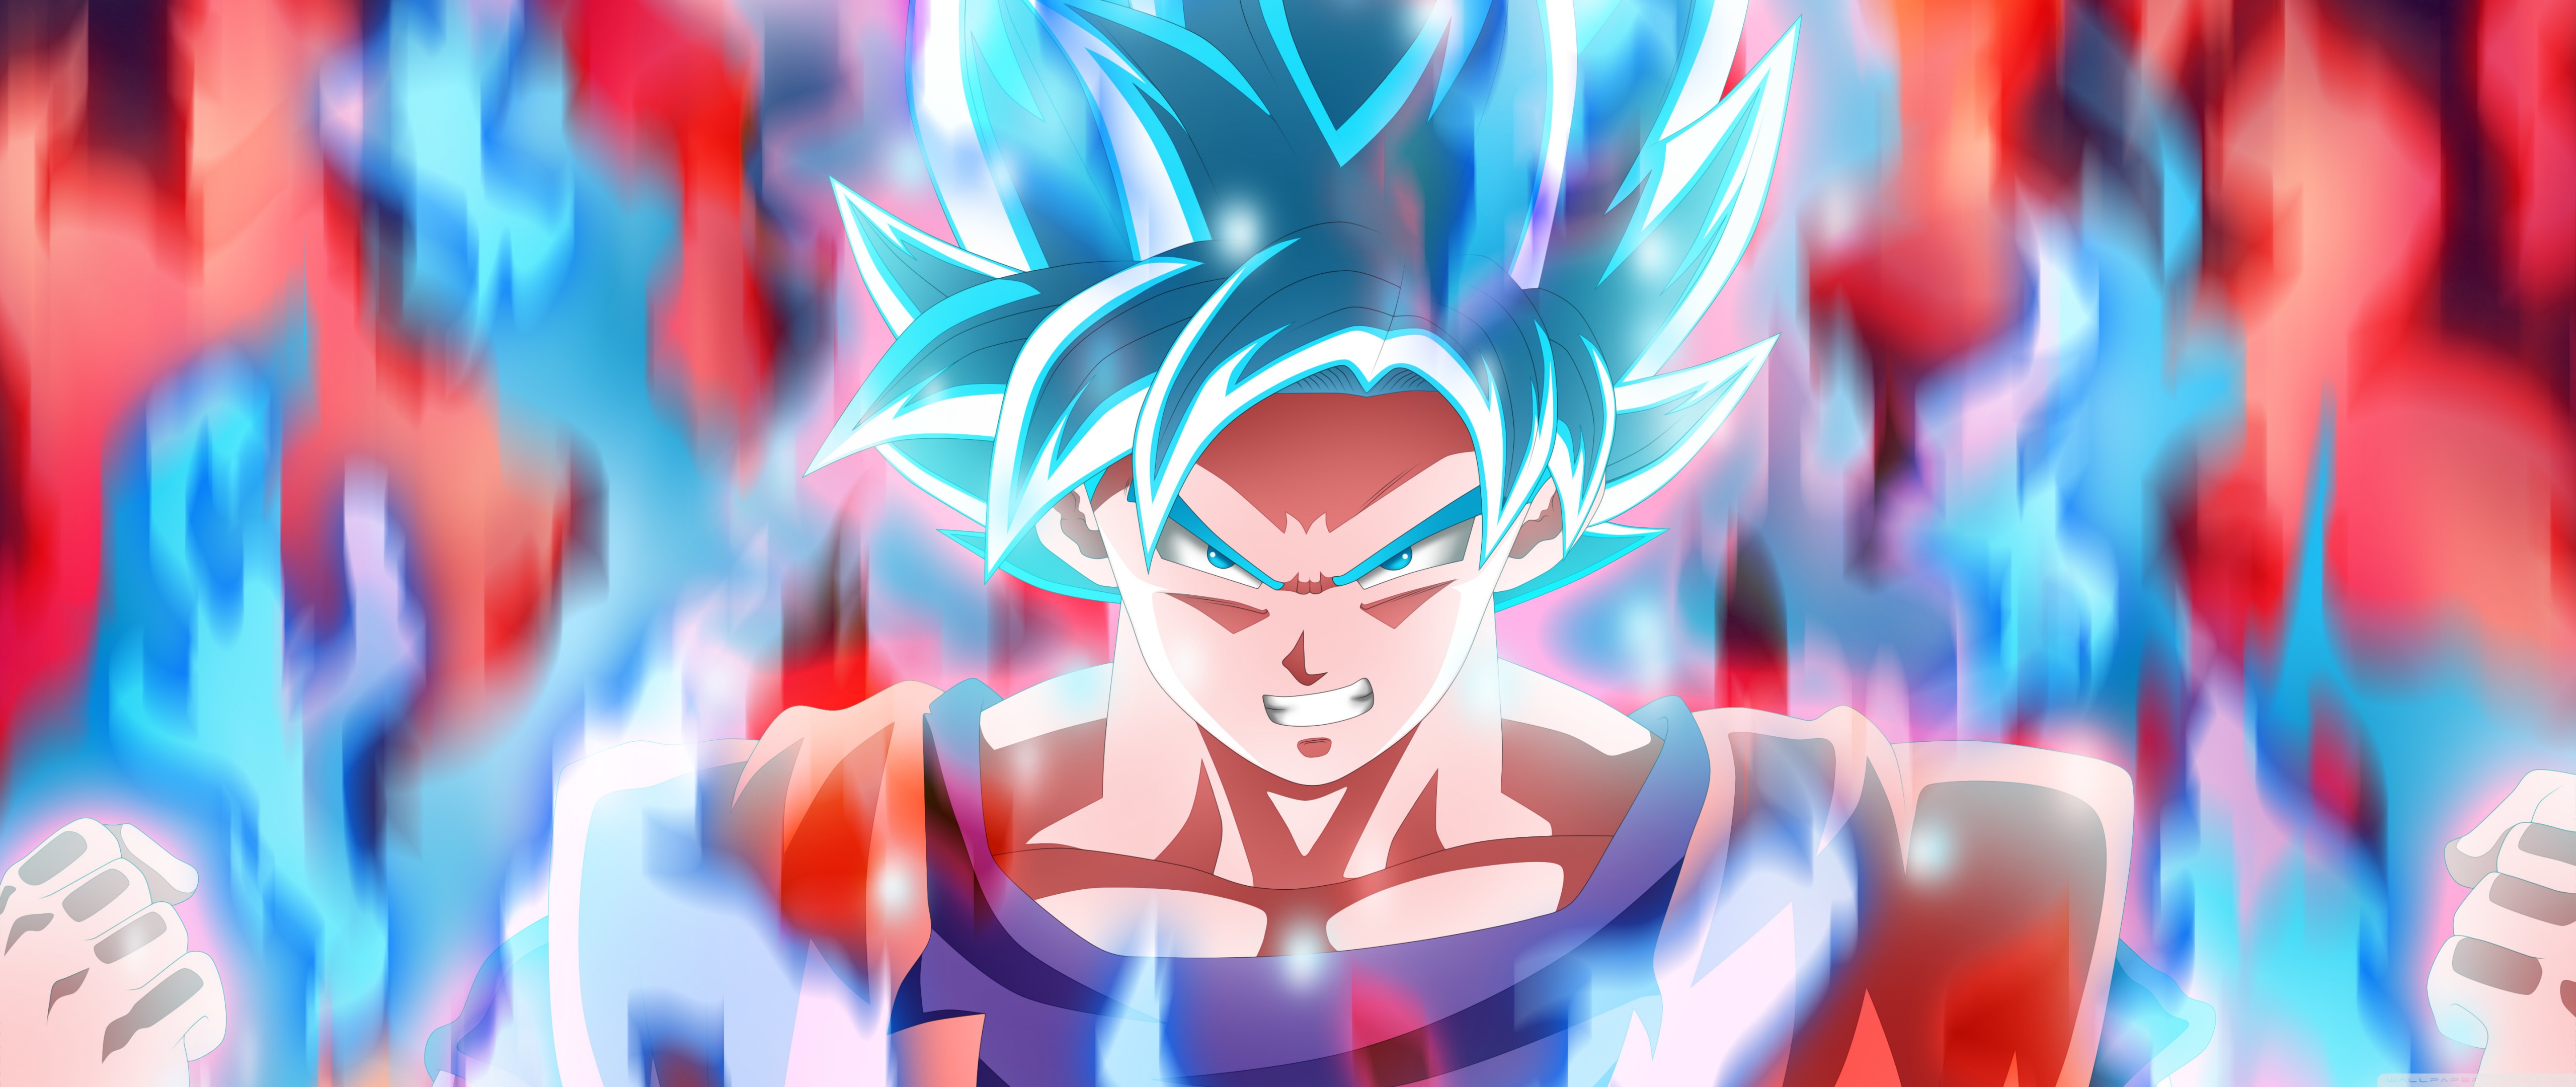 Goku Dragon Ball Super Ultra Hd Desktop Background Wallpaper For